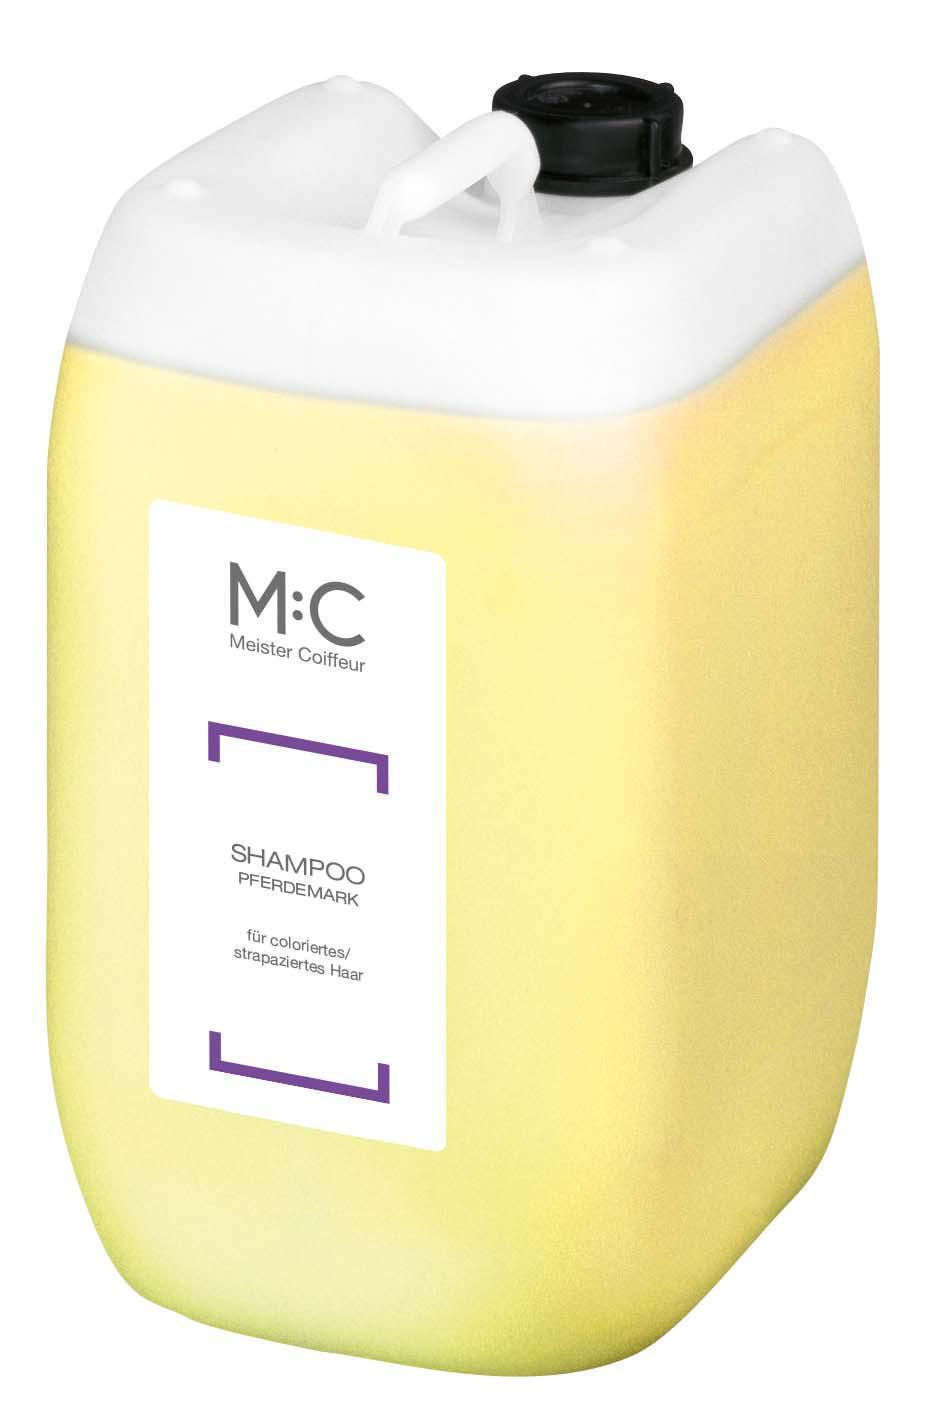 M:C Shampoo Pferdemark 5000ml für coloriertes/strapaziertes Haar